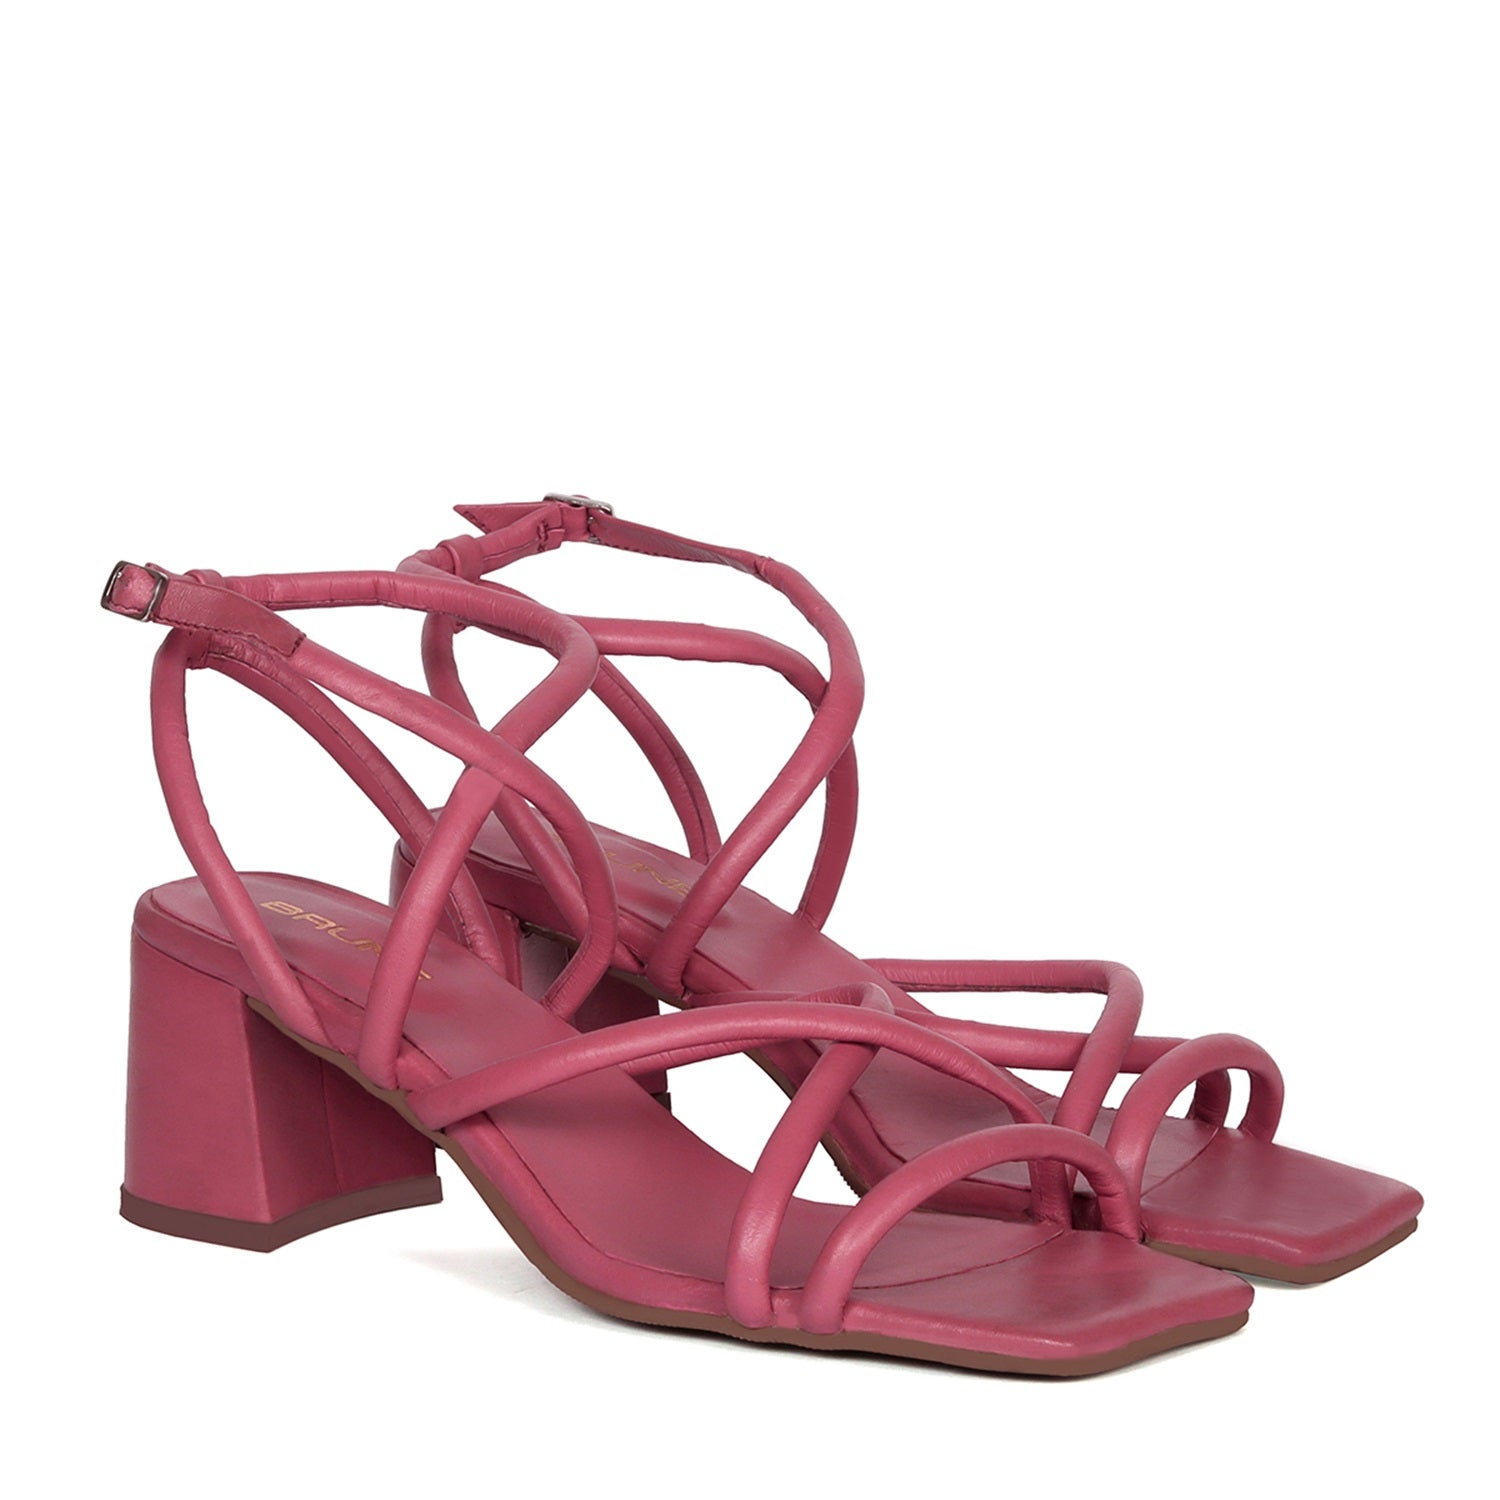 Criss-Cross Pink Genuine Leather Blocked Heel Buckle Strap Sandal For Ladies By Brune & Bareskin